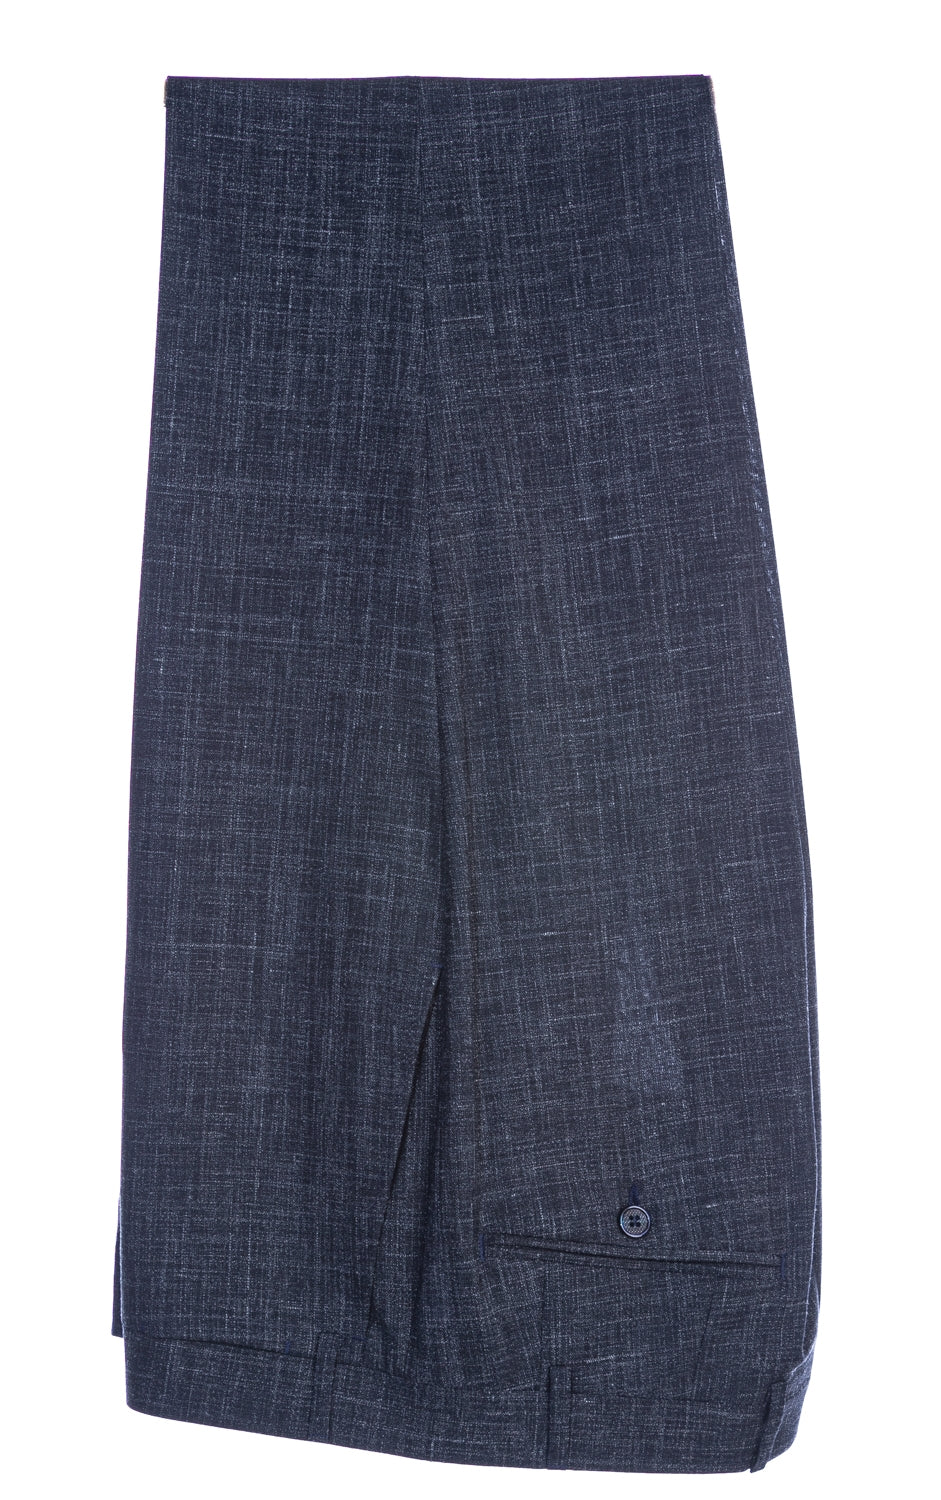 Canali Linen Mix Notch Lapel Suit in Navy Trouser